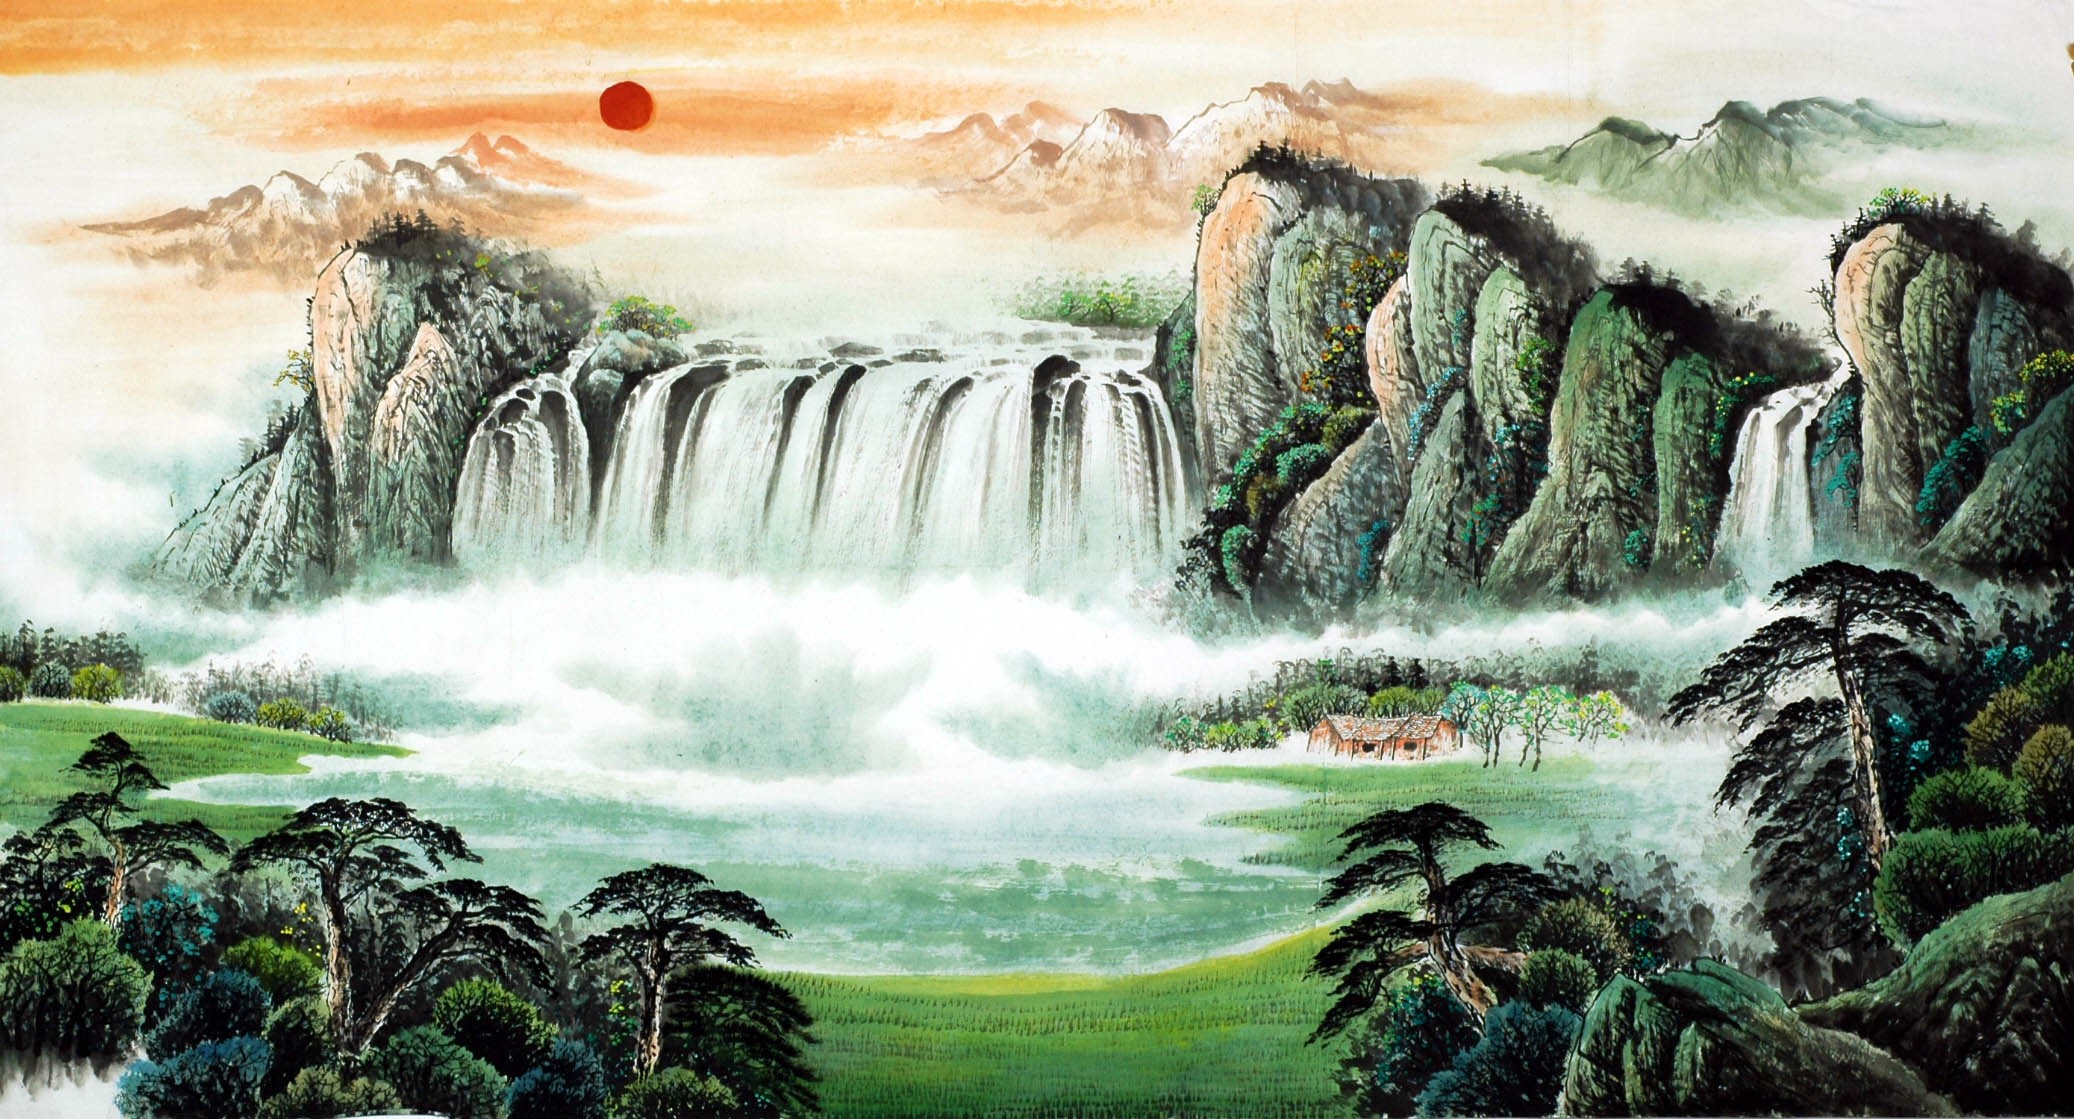 Chinese Landscape Painting - CNAG007577